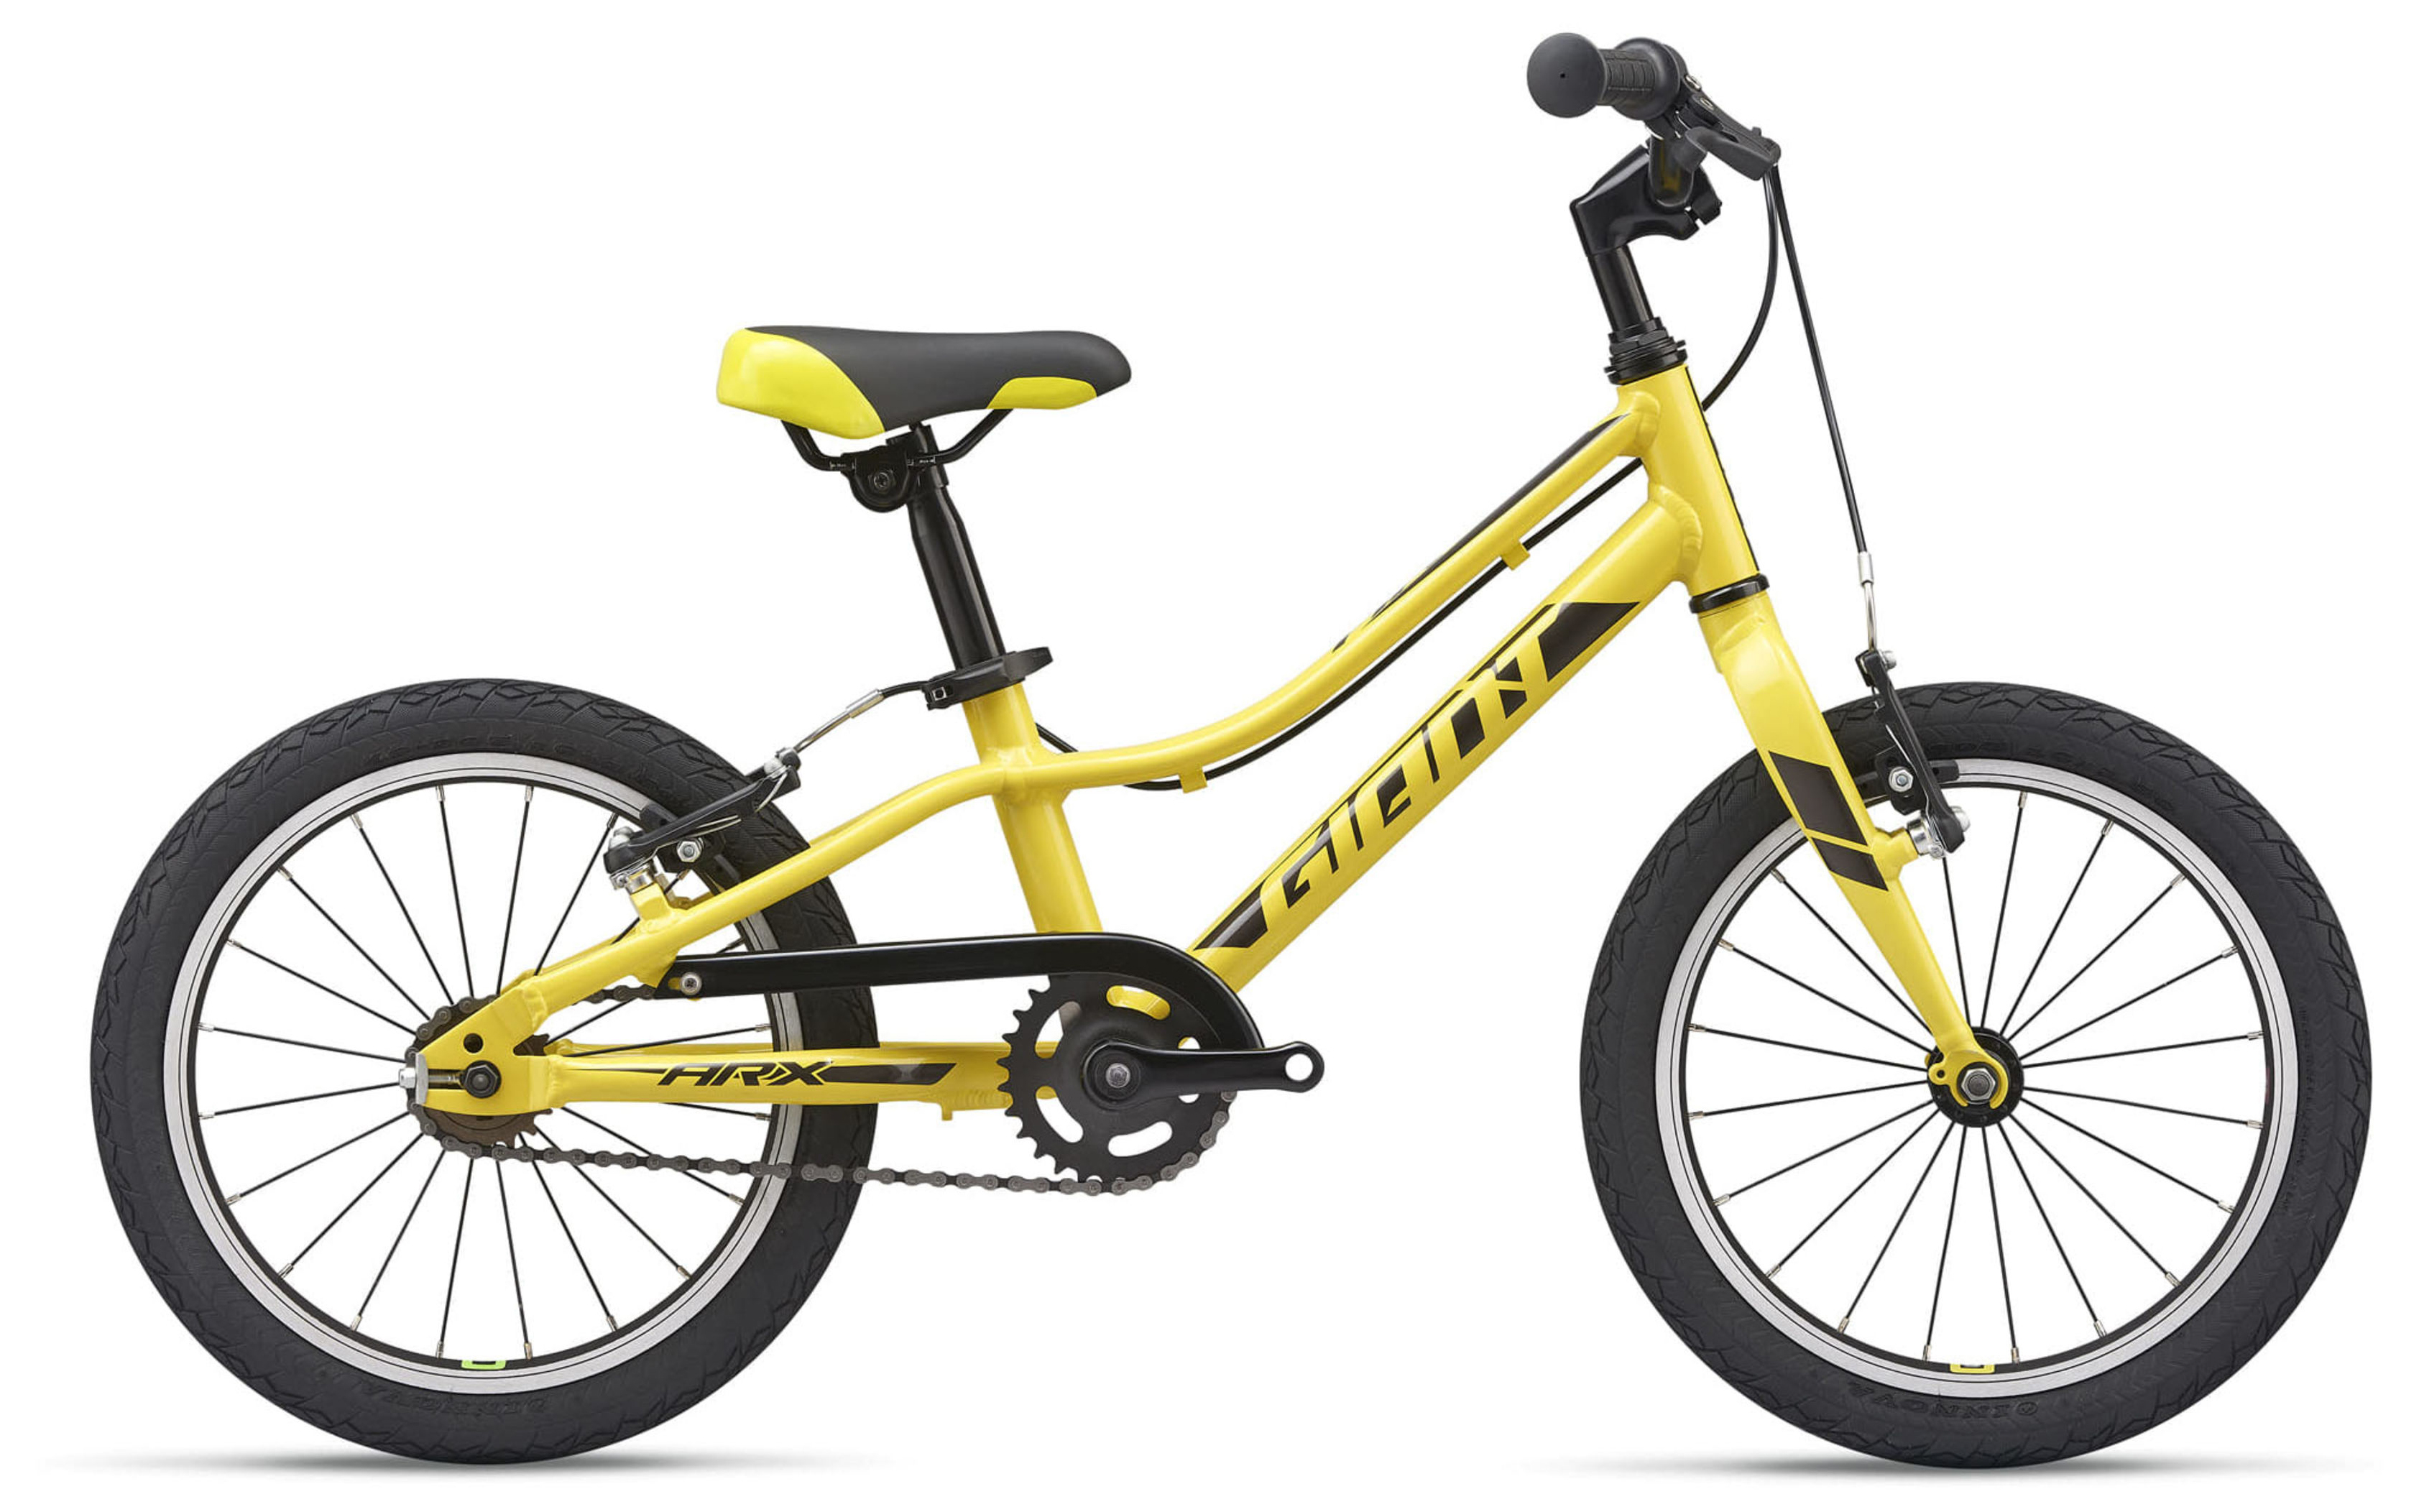  Велосипед Giant ARX 16 F/W (2021) 2021